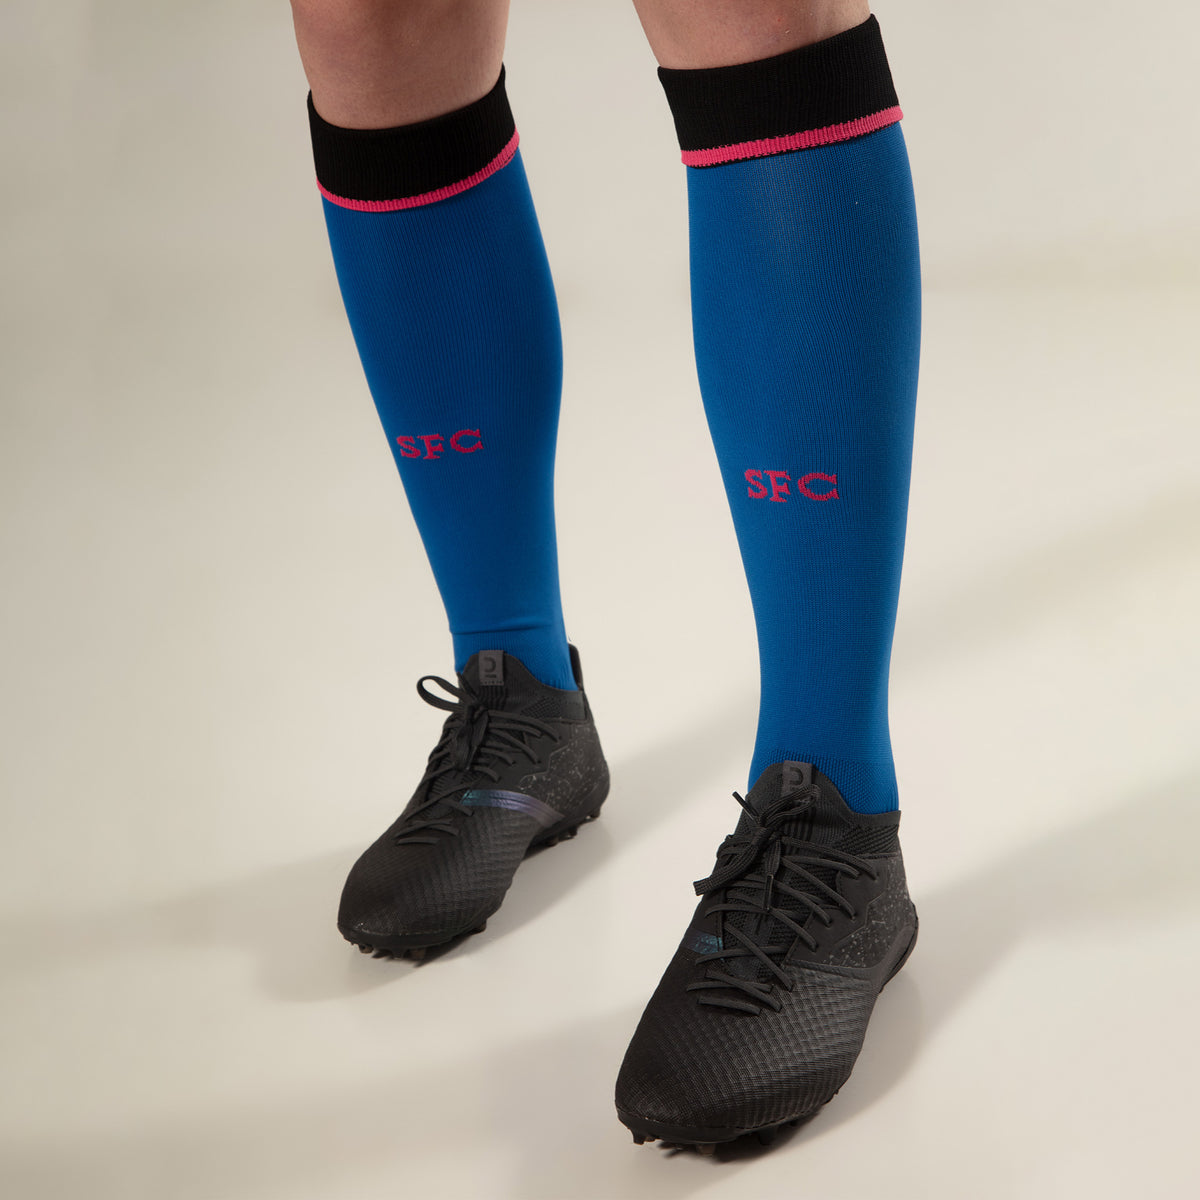 Men’s Third Socks 23/24